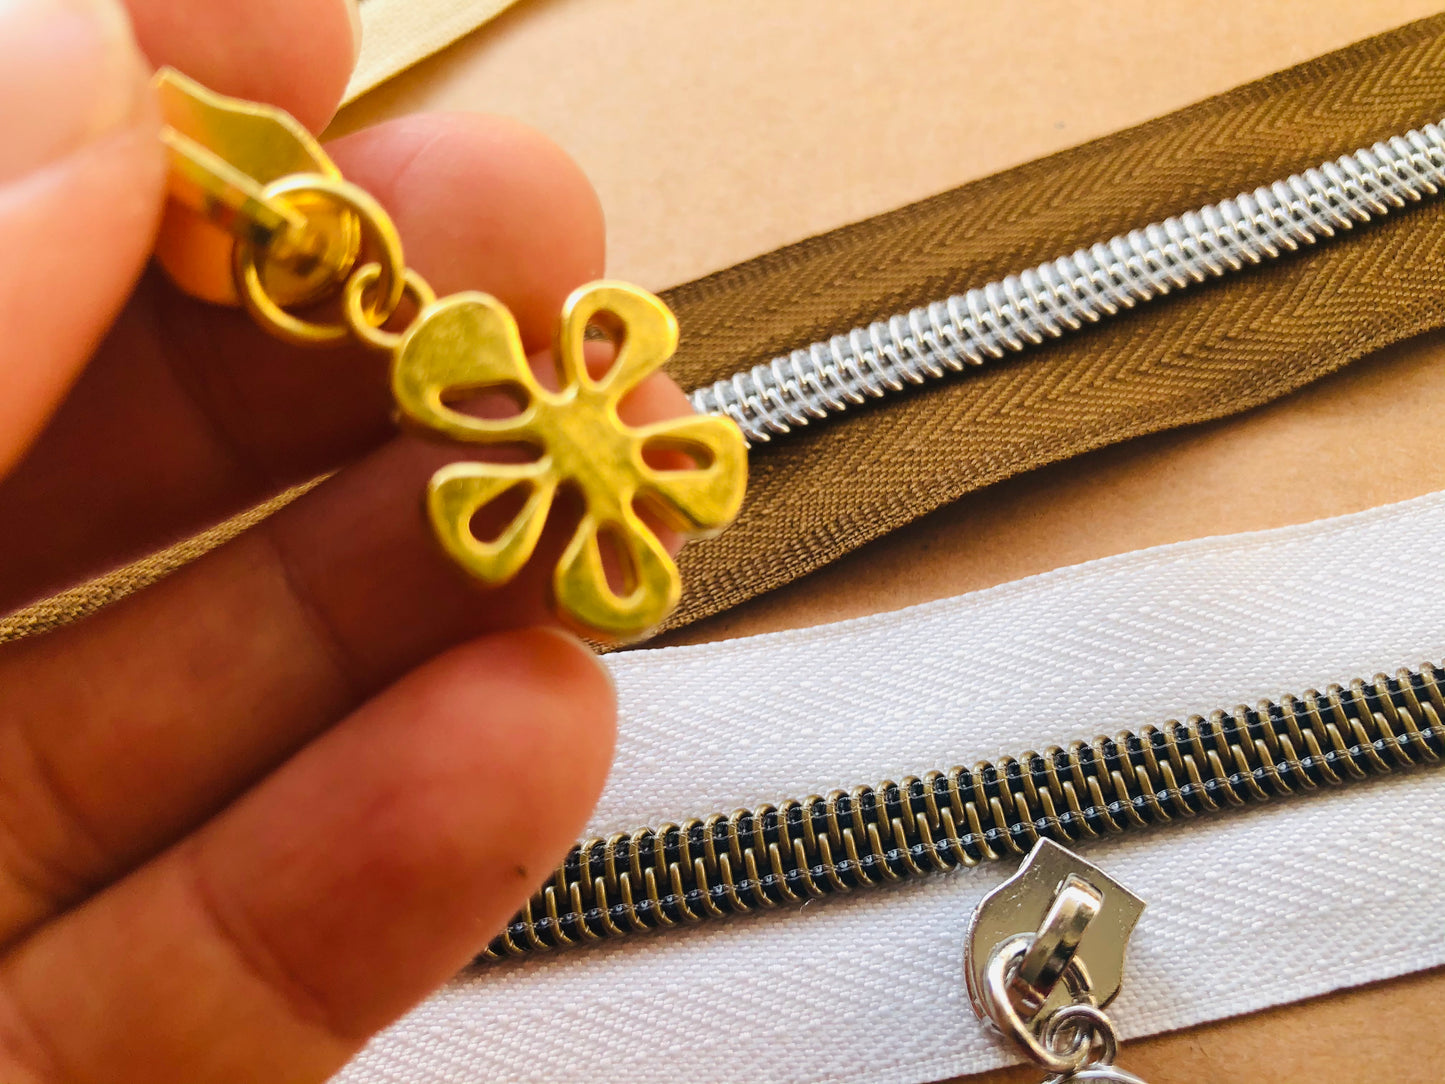 Flower Zipper pulls, Size 5 zipper pulls for nylon zipper tapes, zipper pulls in antique brass, sliver, gold, rose gold, gun metal